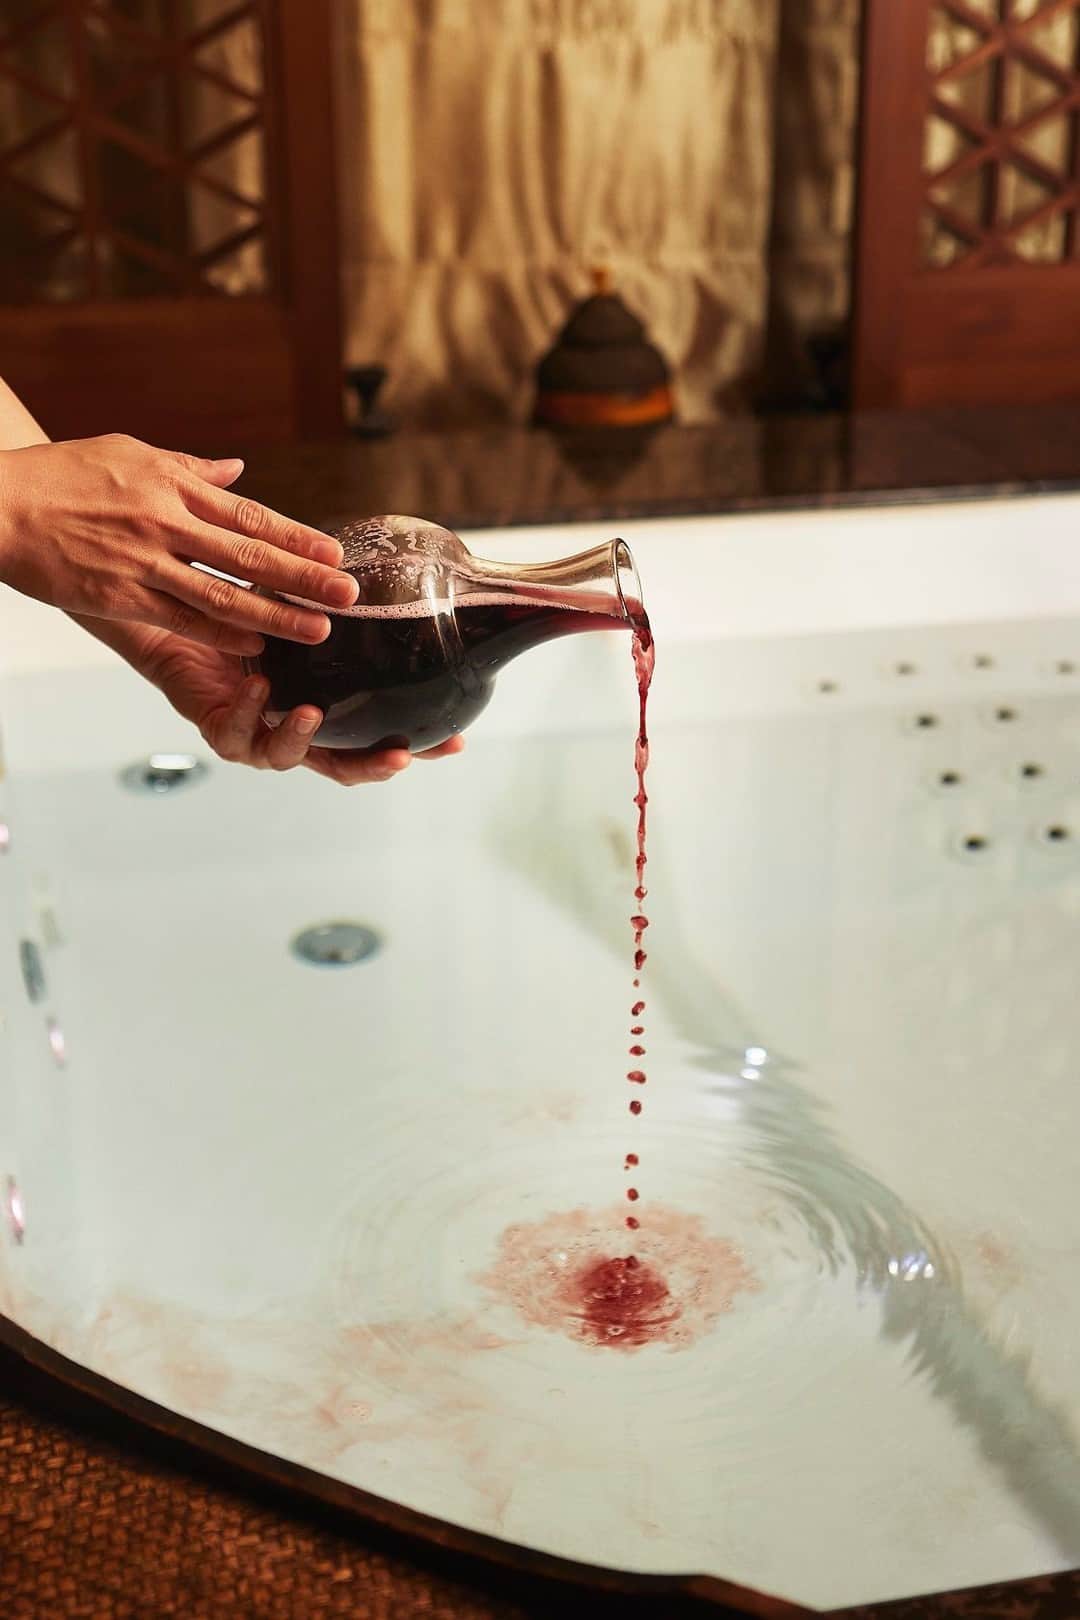 Shangri-La Hotel, Tokyoのインスタグラム：「Chiスパより秋のシグネチャースパトリートメントが到着。⁣ ⁣ 夏の疲れを癒す「オーセンティック東京エクスペリエンス 秋」は、強い抗酸化作用を持つポリフェノールに着目し、ポリフェノールが豊富に含まれる赤ワインや赤葡萄葉を使用。⁣ ⁣ 赤ワインを贅沢に使用したバスで体を温め、赤葡萄葉のスクラブで夏の紫外線で疲れた肌をマッサージ。スチームサウナでデトックスした後は、果実のように華やかなオレンジ、マンダリン、ホーリーフ、ゼラニウムの香りに包まれながら全身をマッサージしてほぐします。⁣ ⁣ 心身ともに癒される極上のひとときをお過ごしください。本トリートメントは11月末まで。⁣ ⁣ Autumn Signature Spa Treatments arrive from Chi, The Spa.⁣ ⁣ The Authentic Tokyo Experience Autumn, to combat summer fatigue, focuses on polyphenols, which have powerful antioxidant properties, and uses red wine and red grape leaves, which are rich in polyphenols.⁣ ⁣ A luxurious red wine bath warms the body, while a red grape leaf peeling massages skin tired from summer UV rays. After a detox in the steam sauna, the whole body is massaged and pampered with the fruity scents of orange, tangerine, hoary leaf and geranium.⁣ ⁣ Enjoy an exquisite moment of healing for body and mind. This treatment is available until the end of November.⁣ ⁣ #shangrilacircle #myshangrila #shangrilahotels #shangrila #shangrilatokyo #tokyotravel #tokyotrip #tokyostation  #Chithespa #シャングリラ #シャングリラ東京 #シャングリラサークル #東京駅 #丸の内 #大手町  #Chiスパ #ホテルスパ」